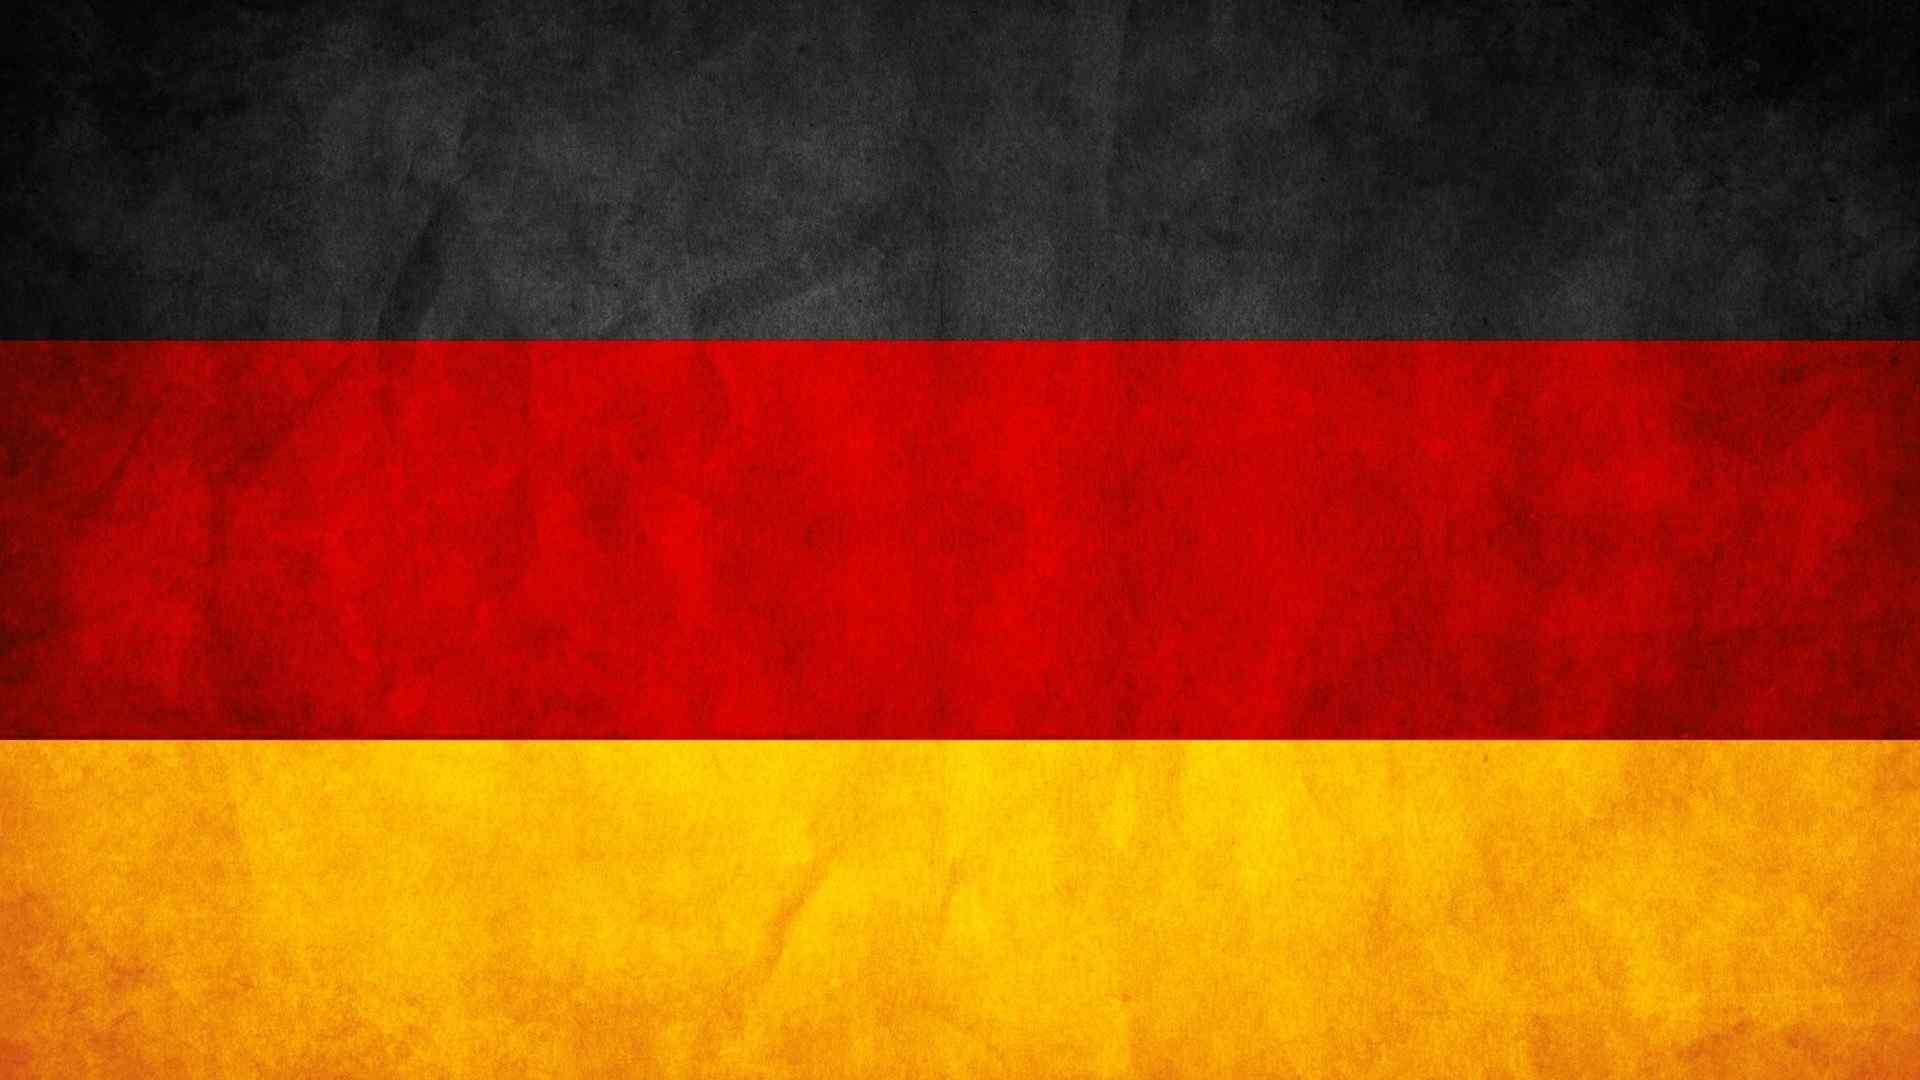 2018世界杯德国国旗高清壁纸